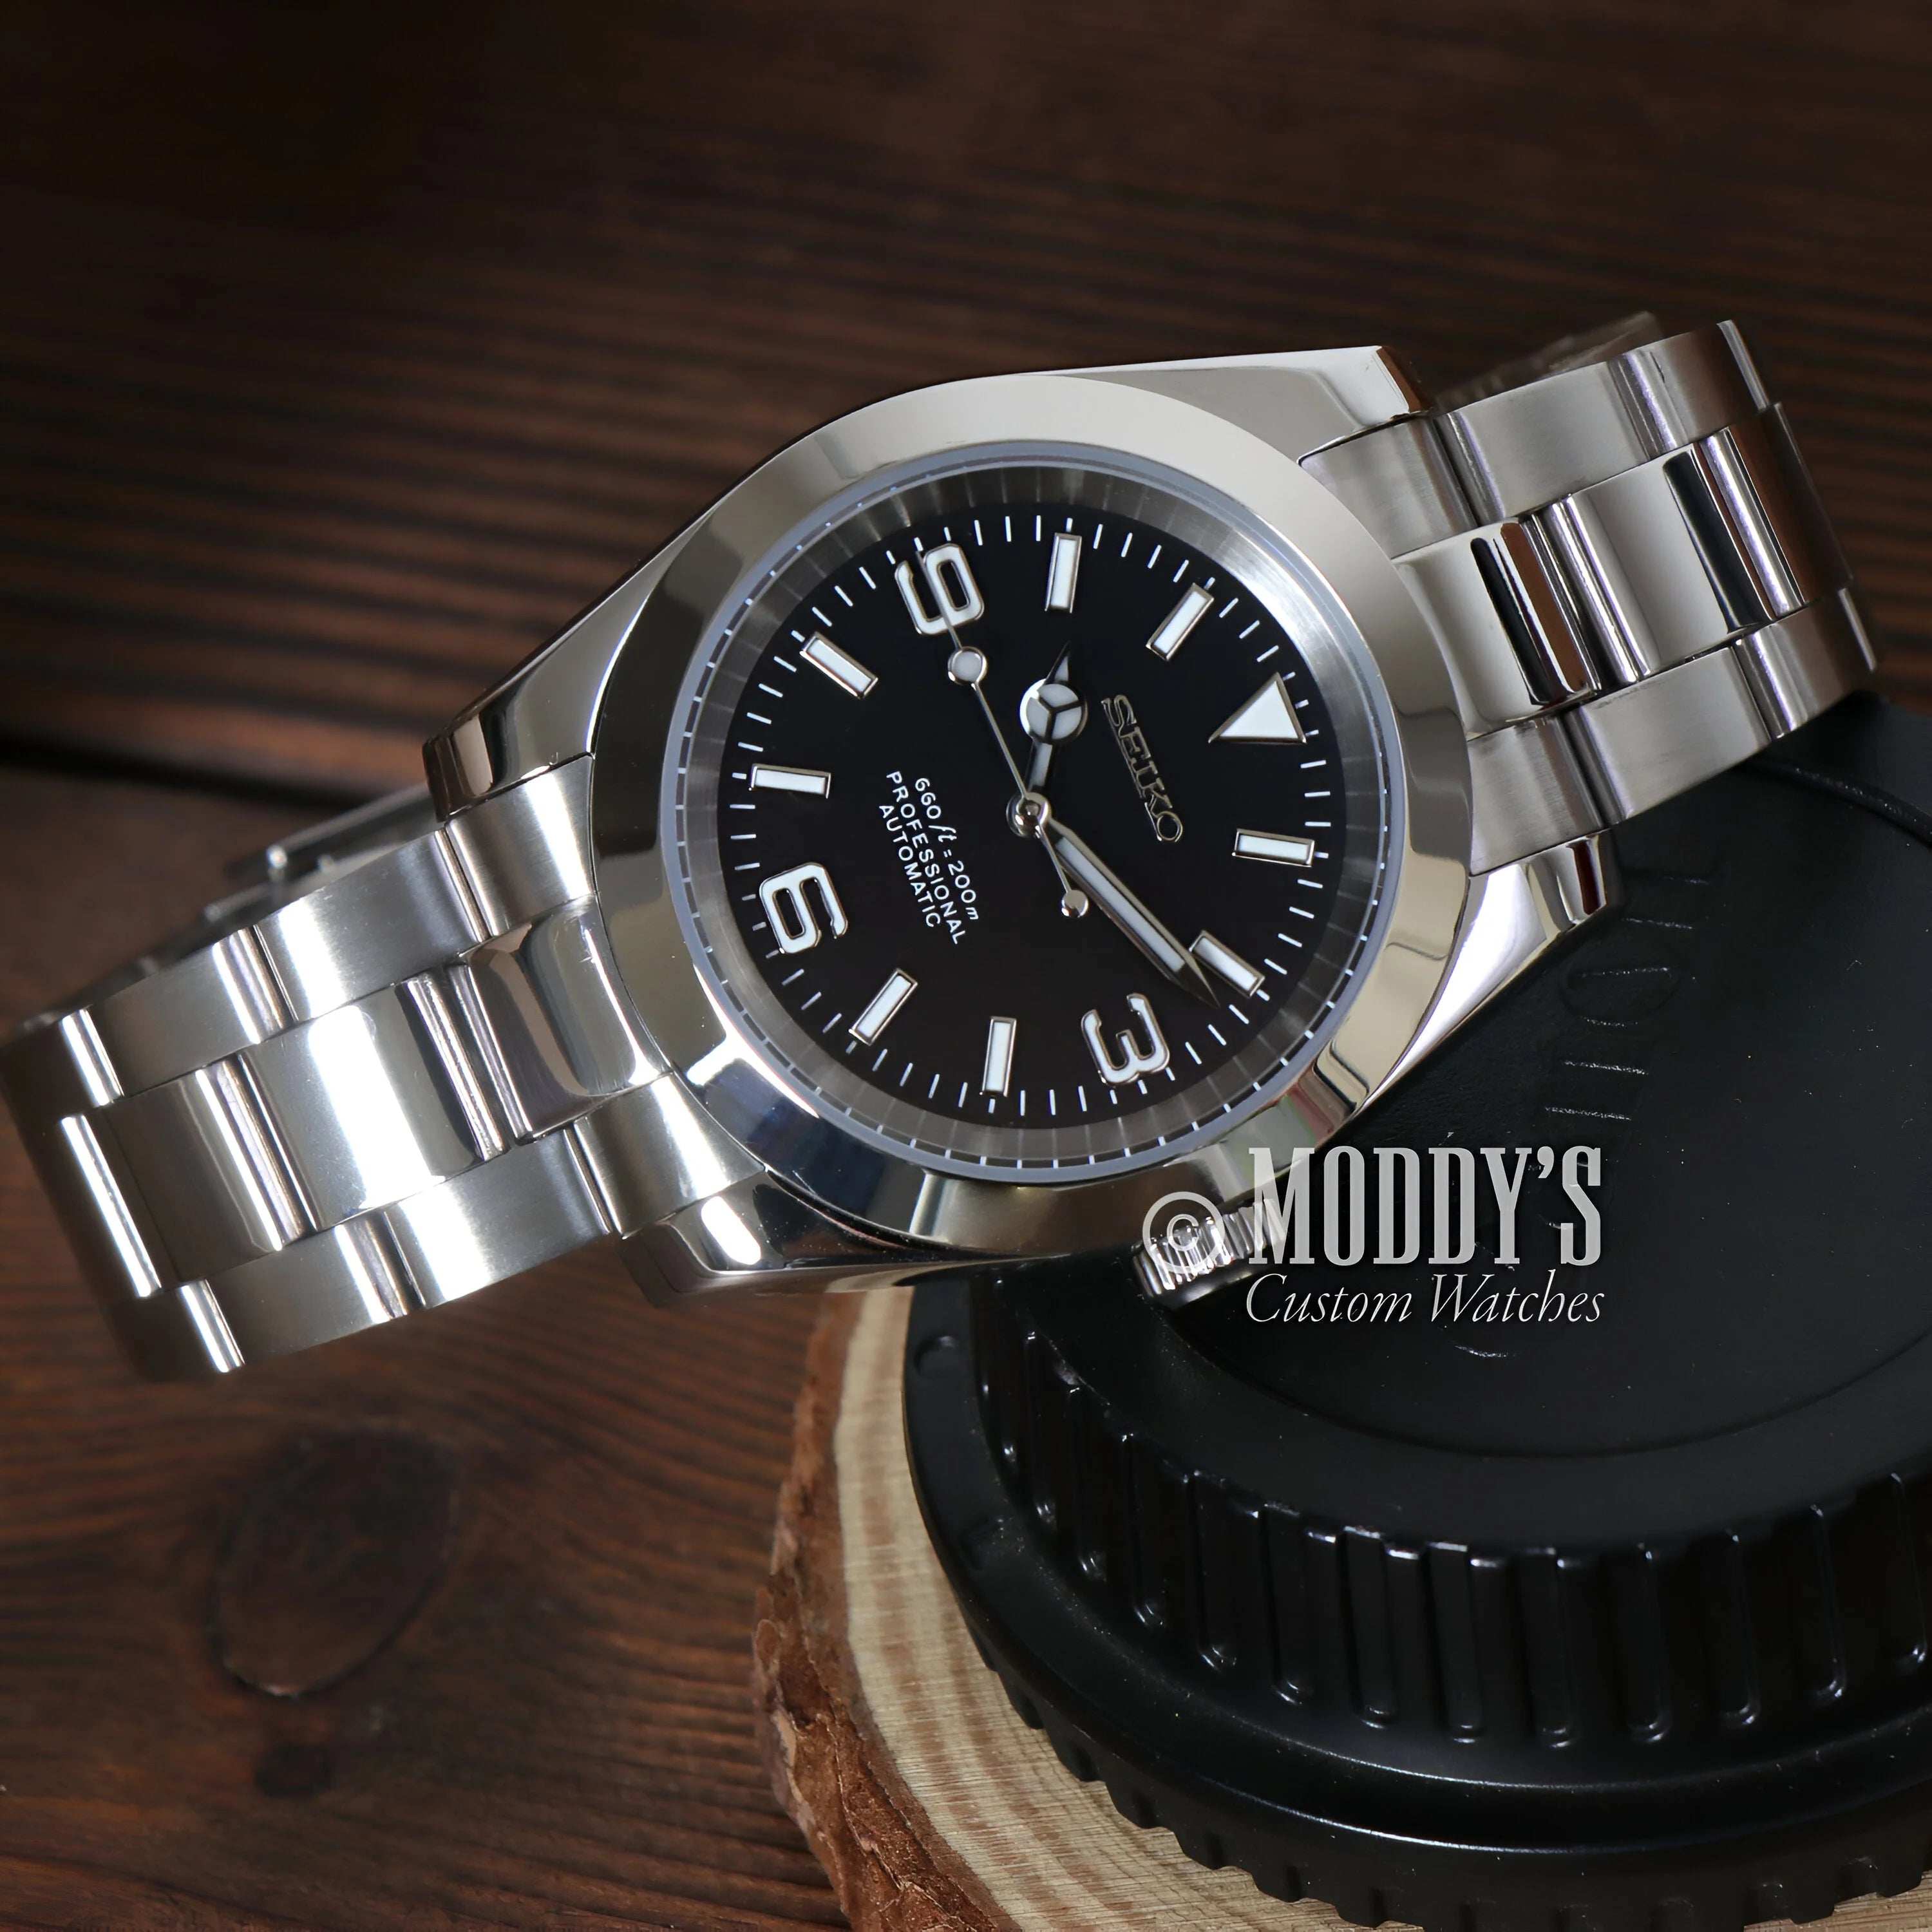 Oysteiko Black Explorer: Stainless Steel Wristwatch, Black Dial, Metal Bracelet, Seiko Mod